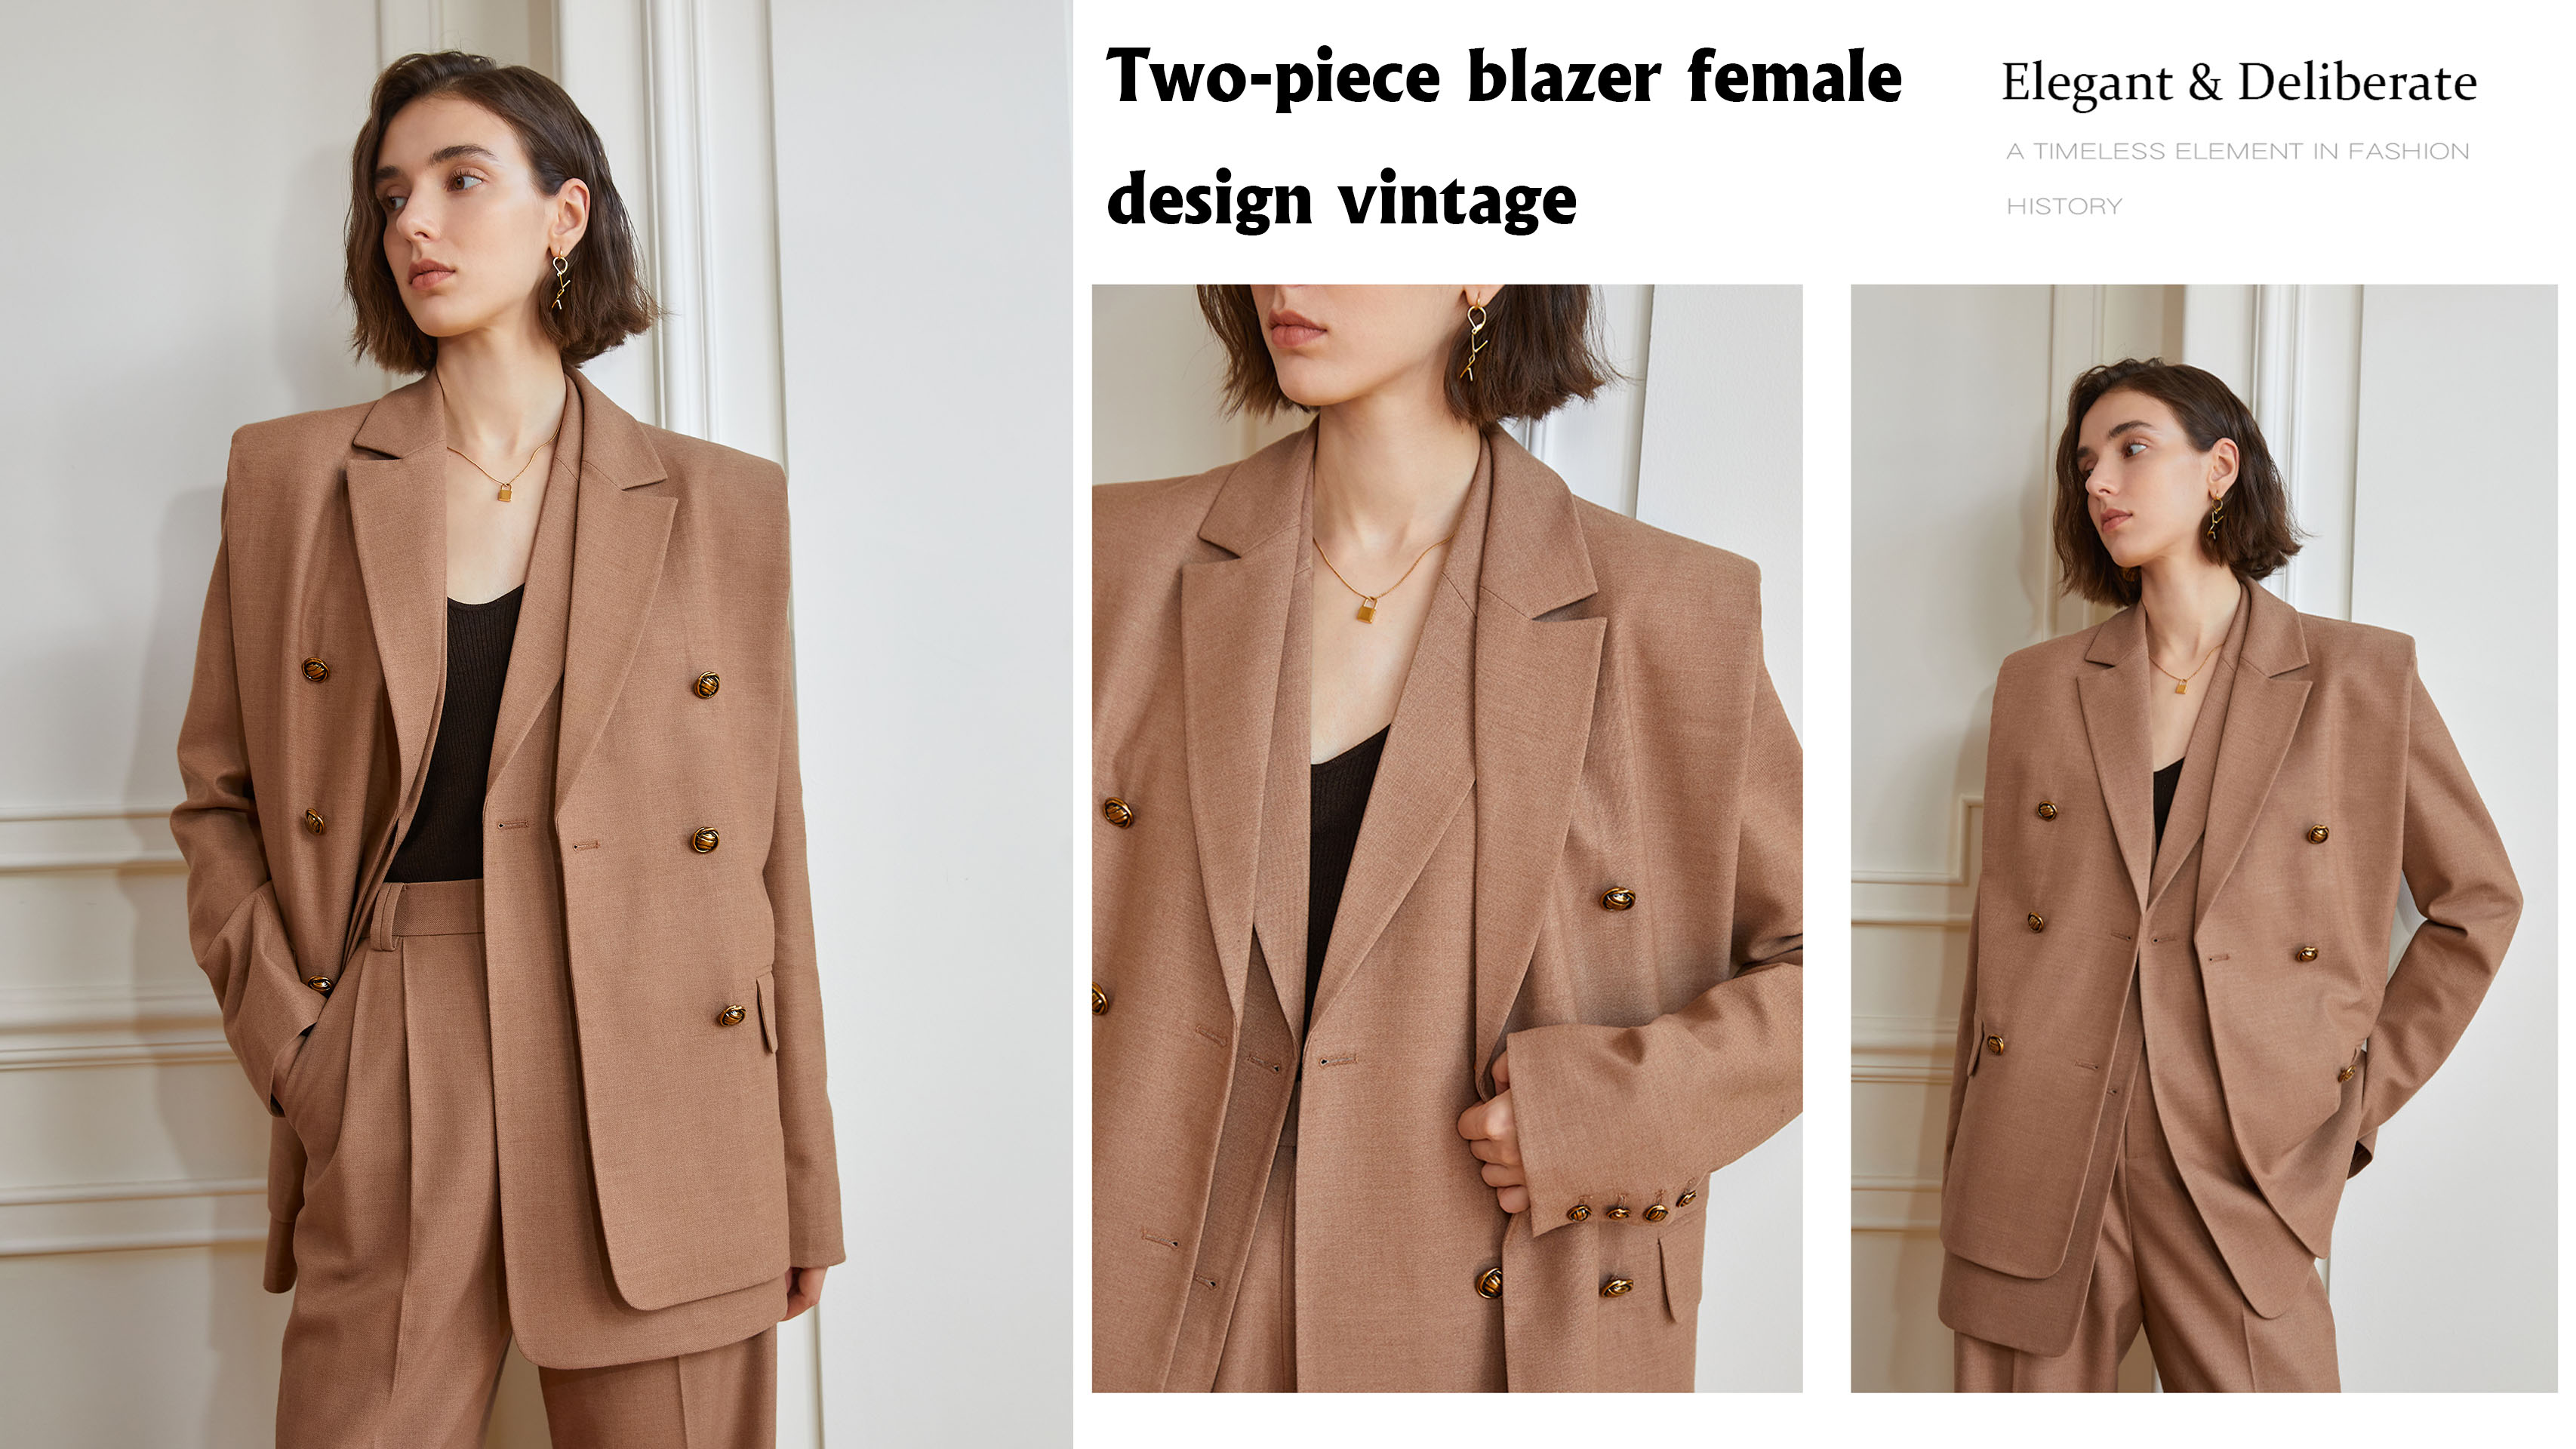 Nejlepší dvoudílný blazer dámského designu vintage Company – Auschalink